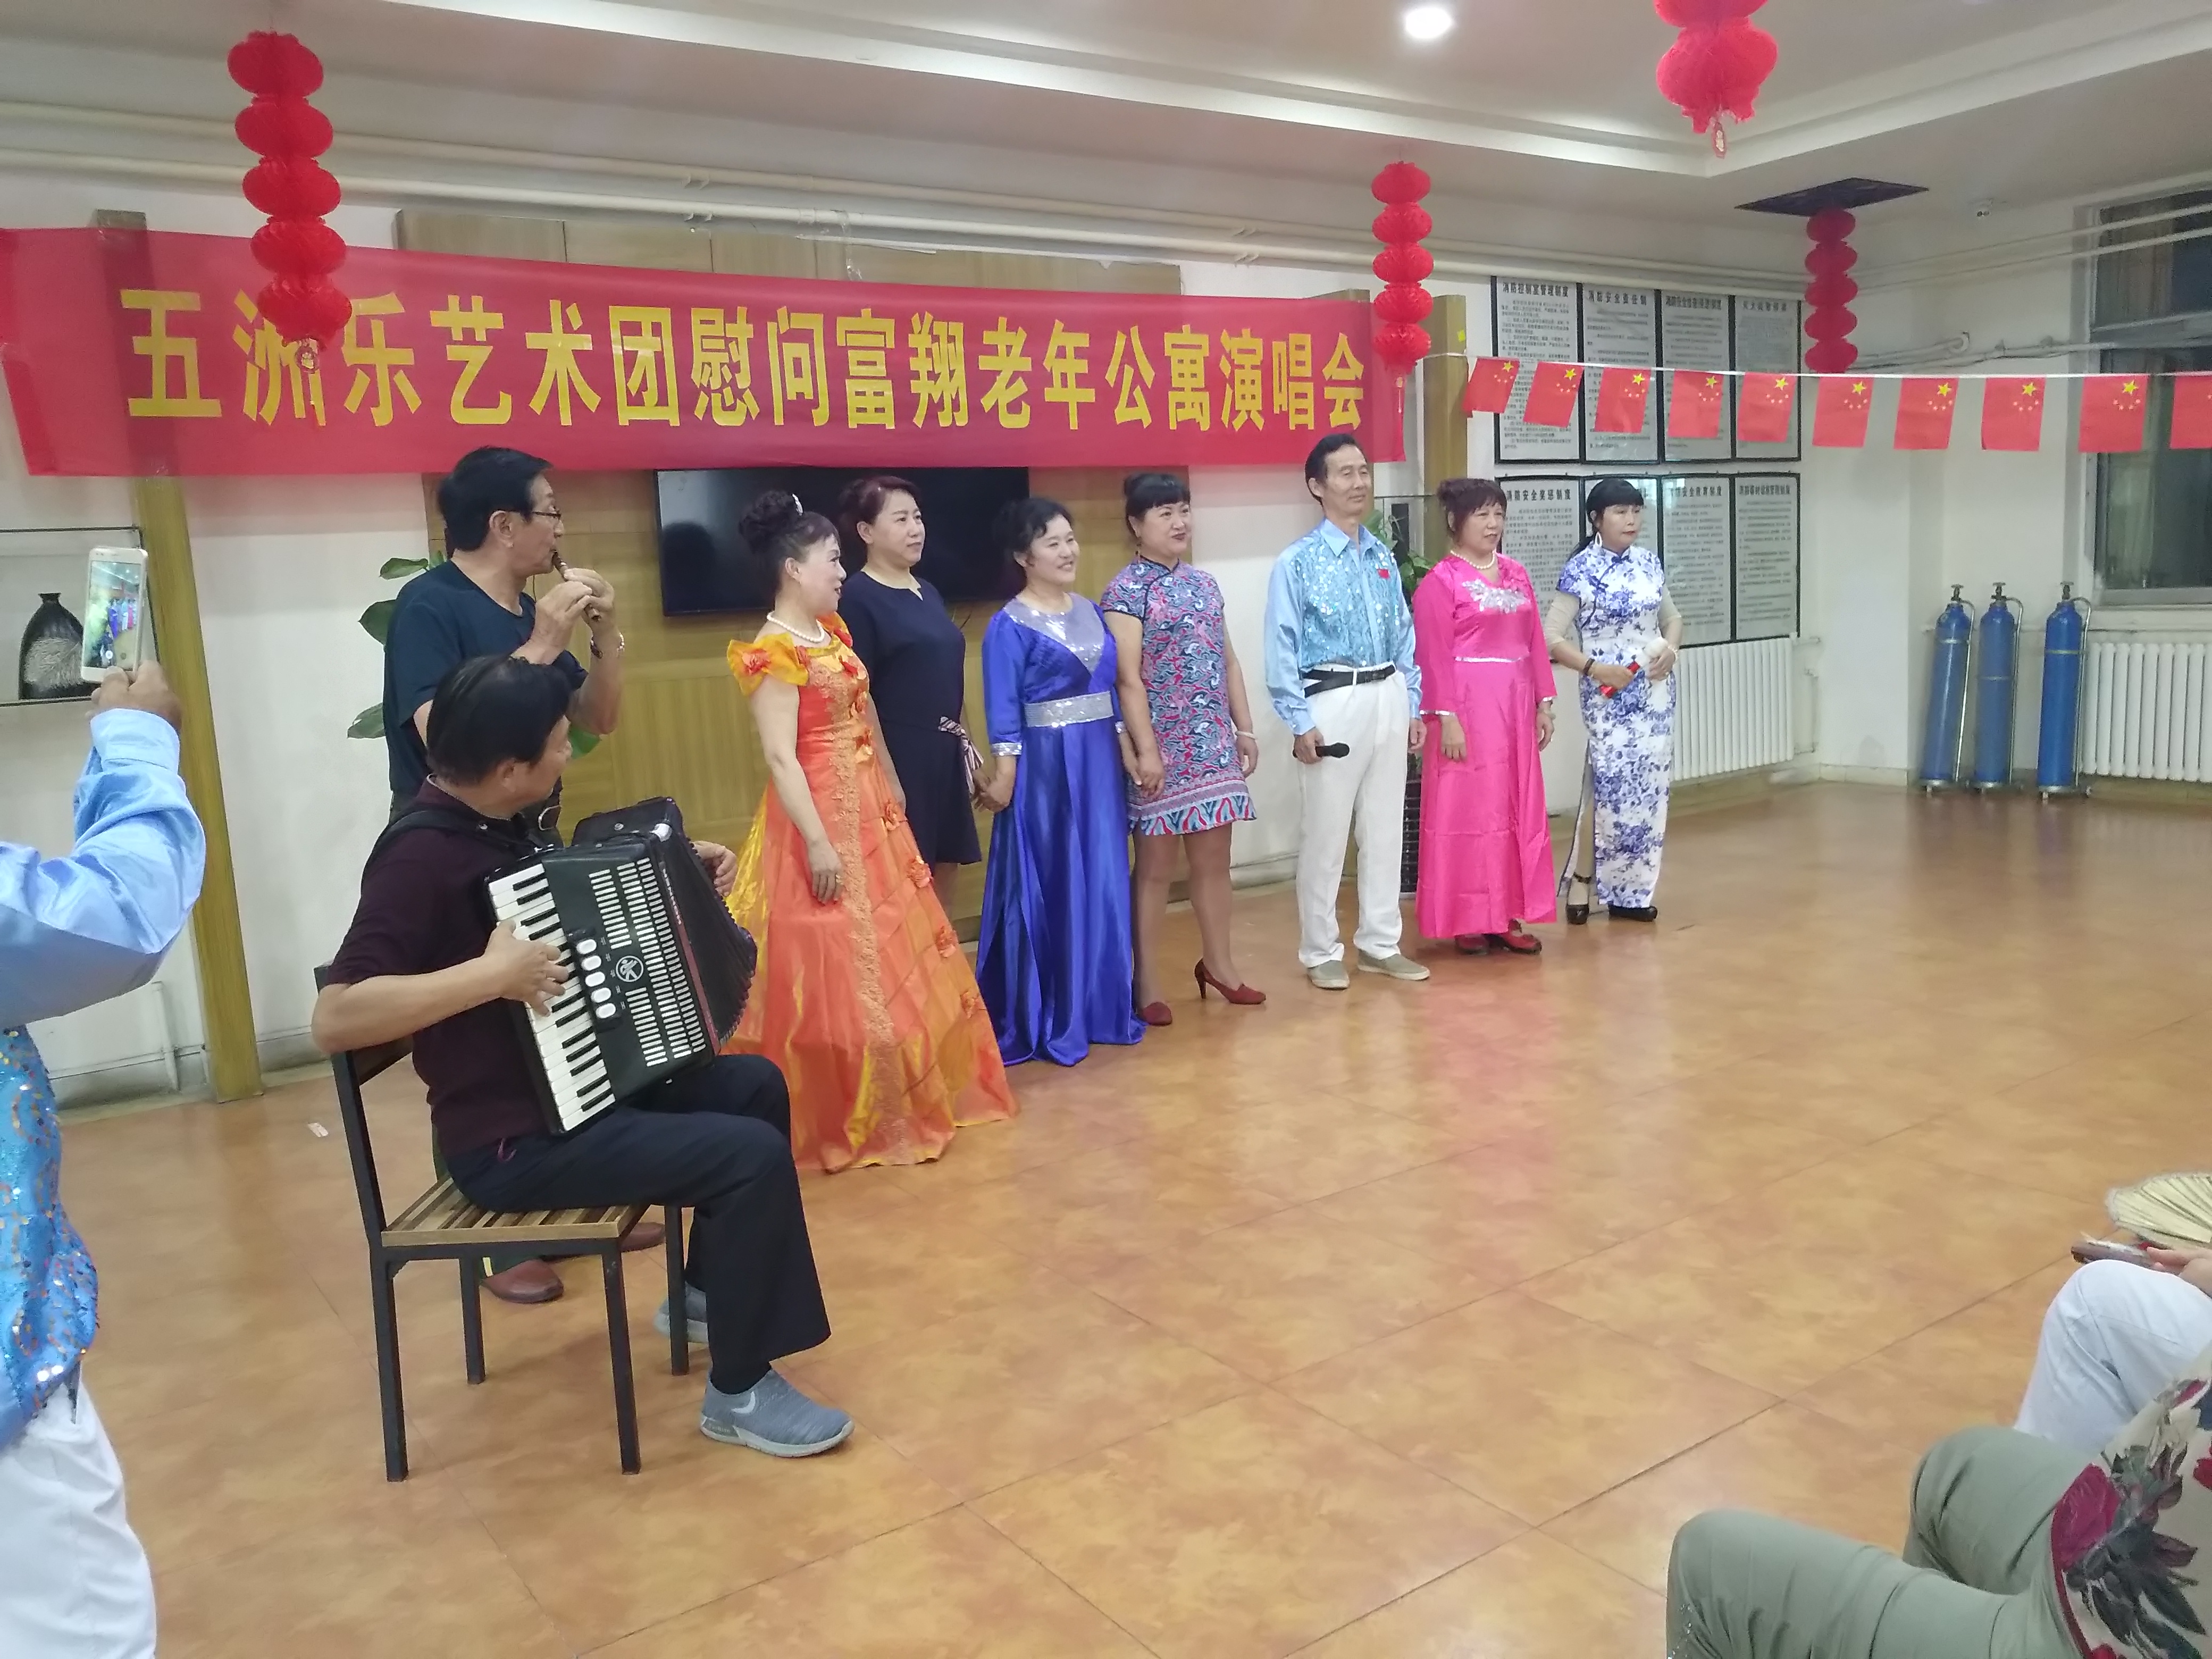 五洲艺术团来到济南市富翔老年公寓慰问演出